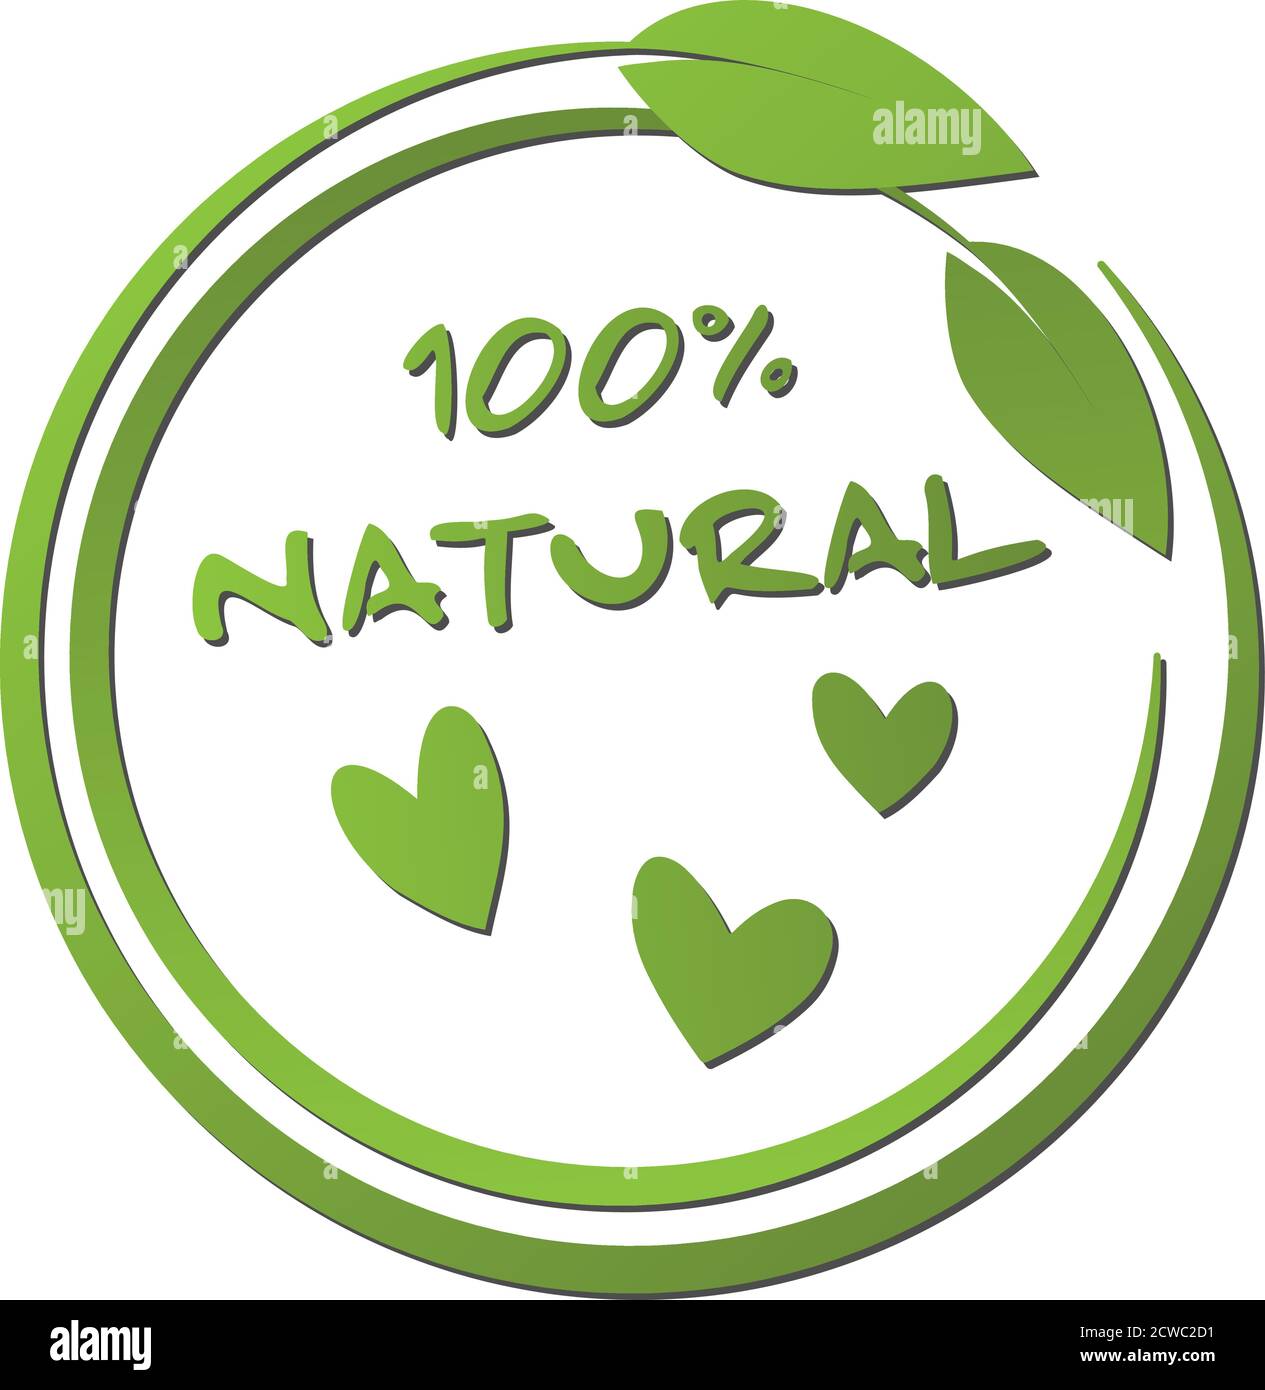 Rundes grünes 100 Prozent natürliches Etikett mit Blatt und Herz Abbildung des Formvektors Stock Vektor